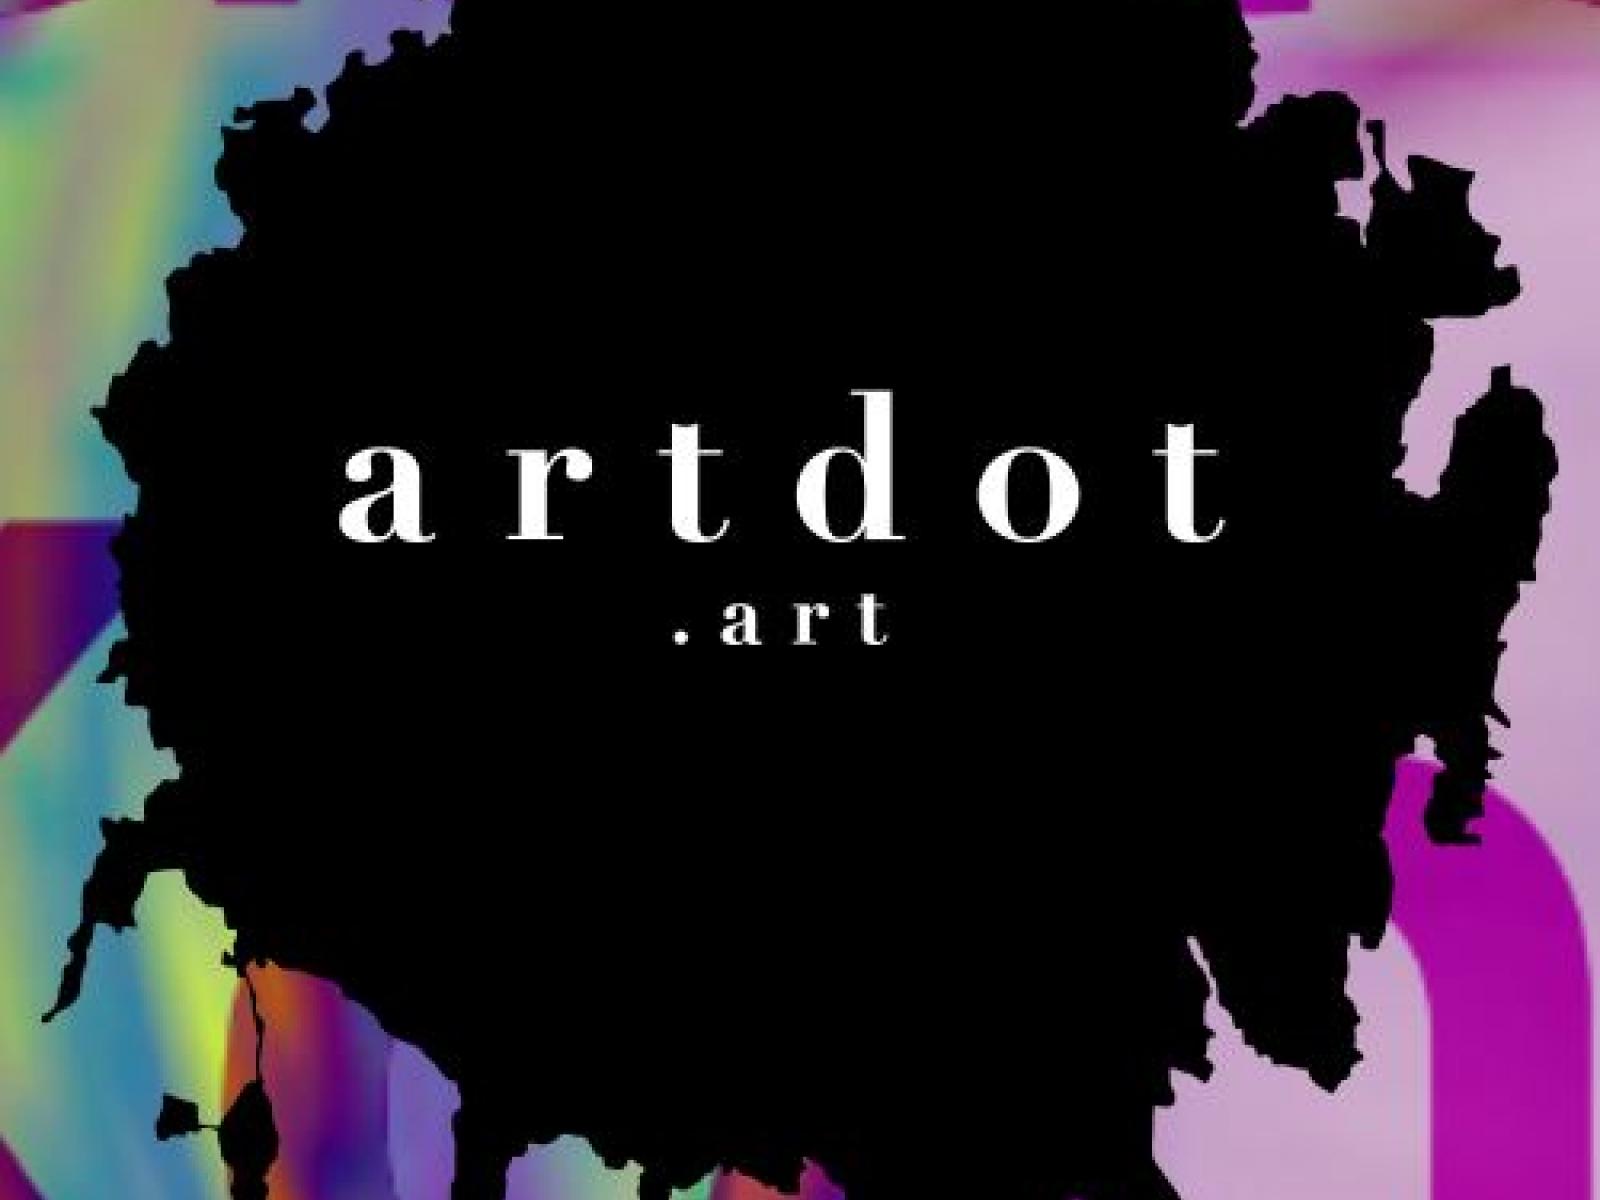 Artdot.art